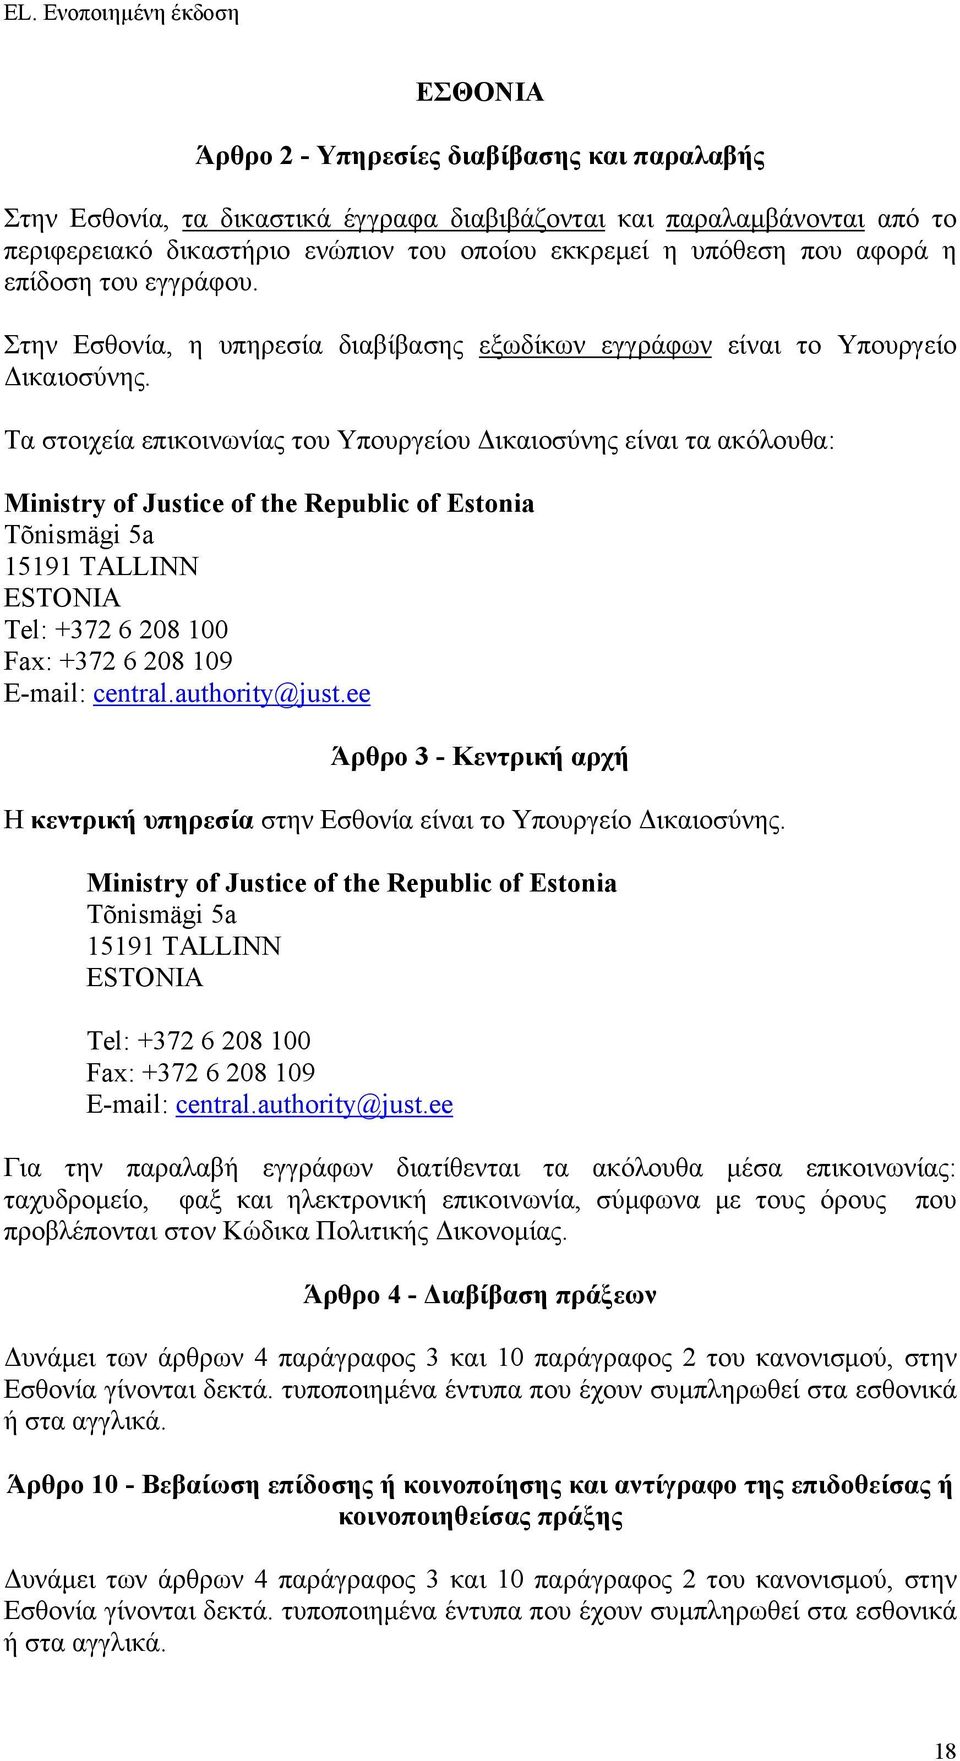 Τα στοιχεία επικοινωνίας του Υπουργείου Δικαιοσύνης είναι τα ακόλουθα: Ministry of Justice of the Republic of Estonia Tõnismägi 5a 15191 TALLINN ESTONIA Tel: +372 6 208 100 Fax: +372 6 208 109